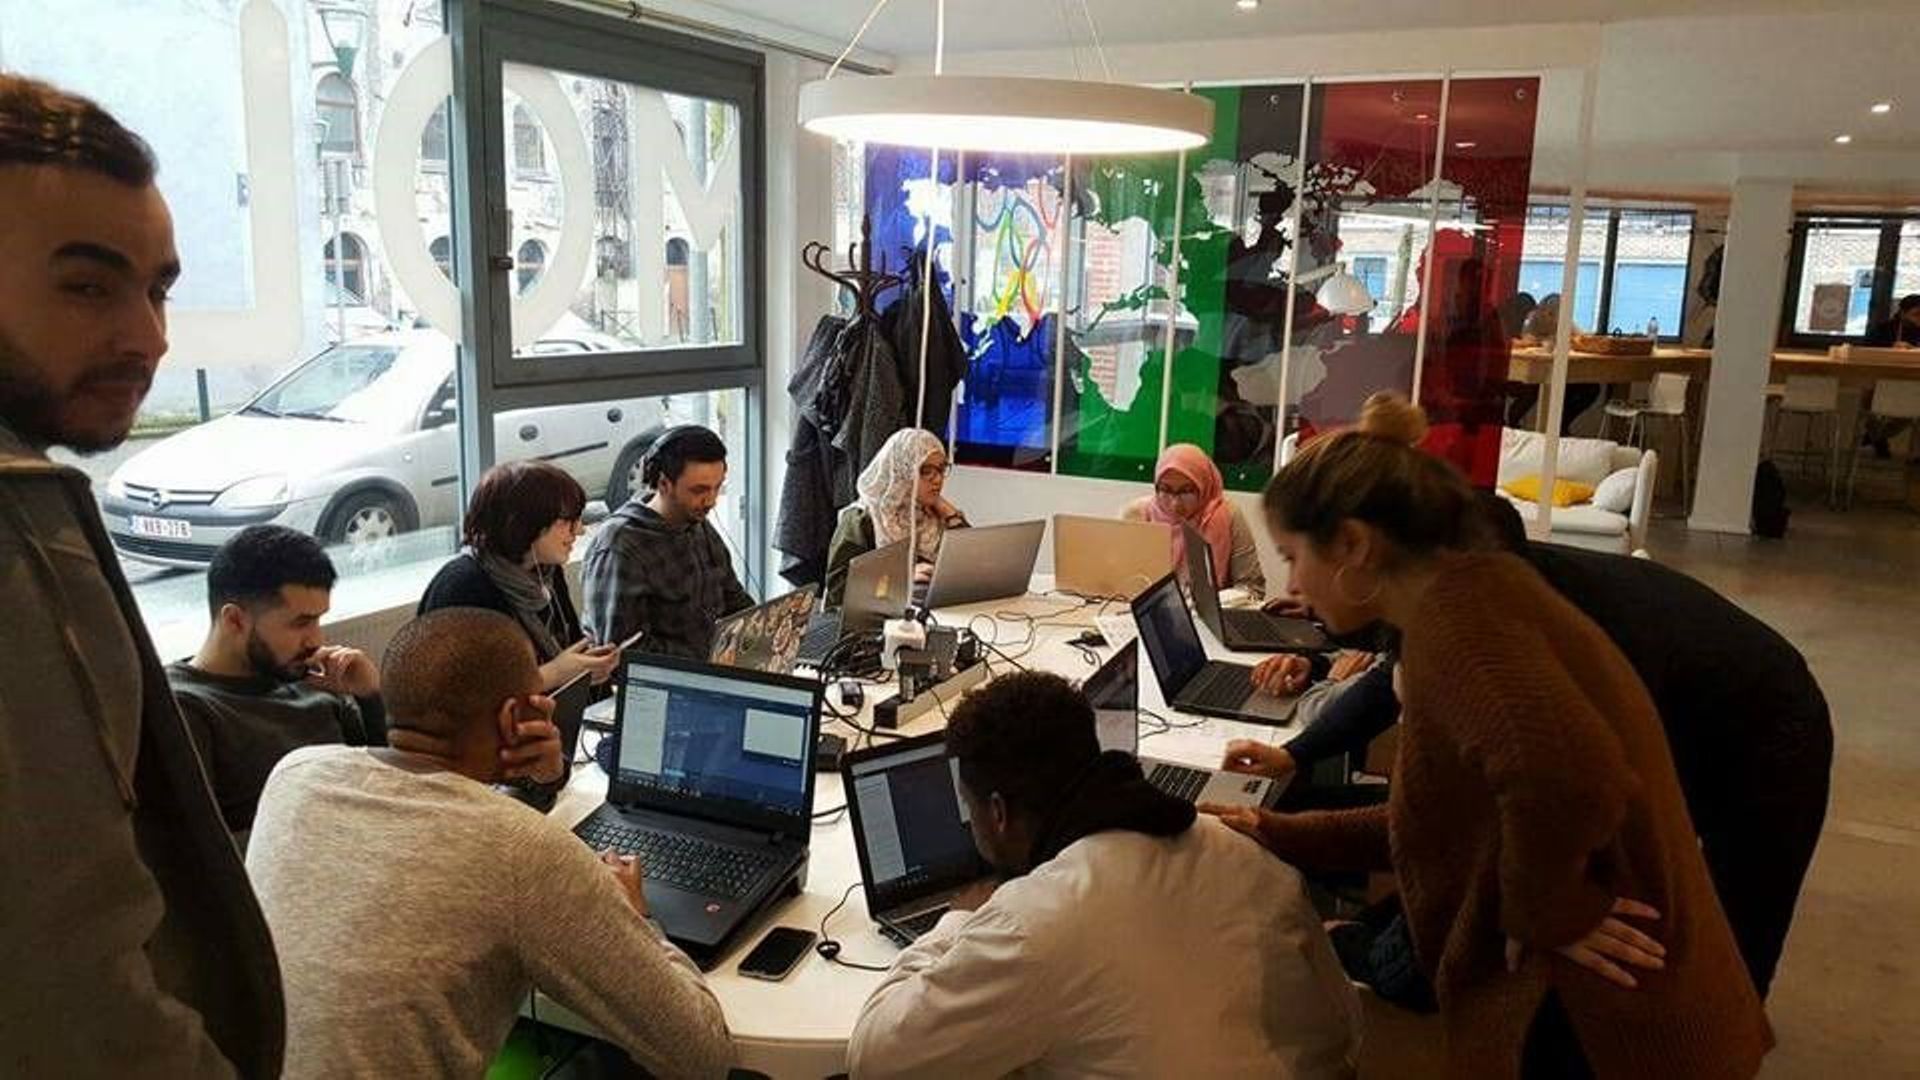 Crée à Molenbeek au début de 2016, le centre de coworking Molengeek travaille selon une méthode vraiment collaborative.